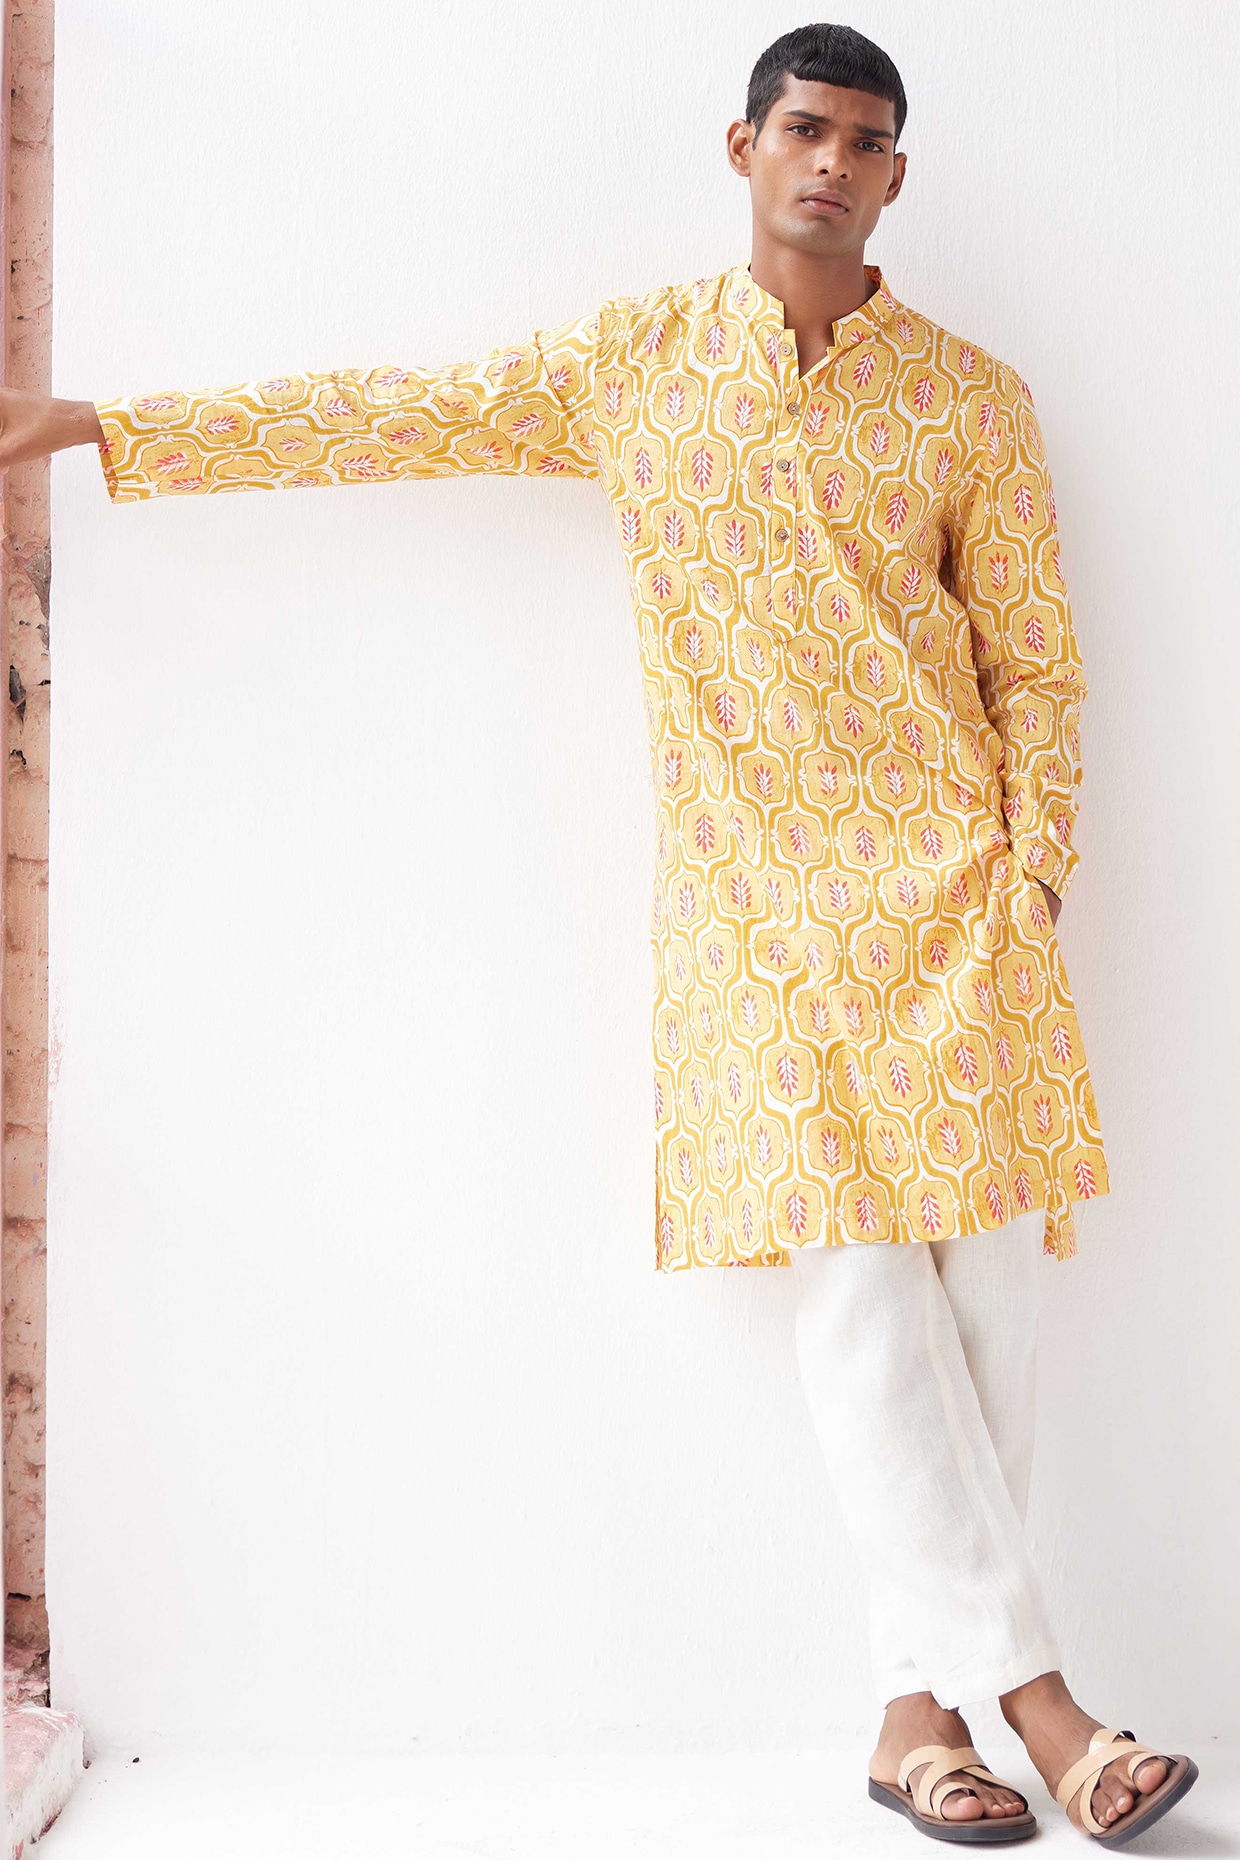 ziaaz designer 240 pakistani salwar suit wholesale kurti online